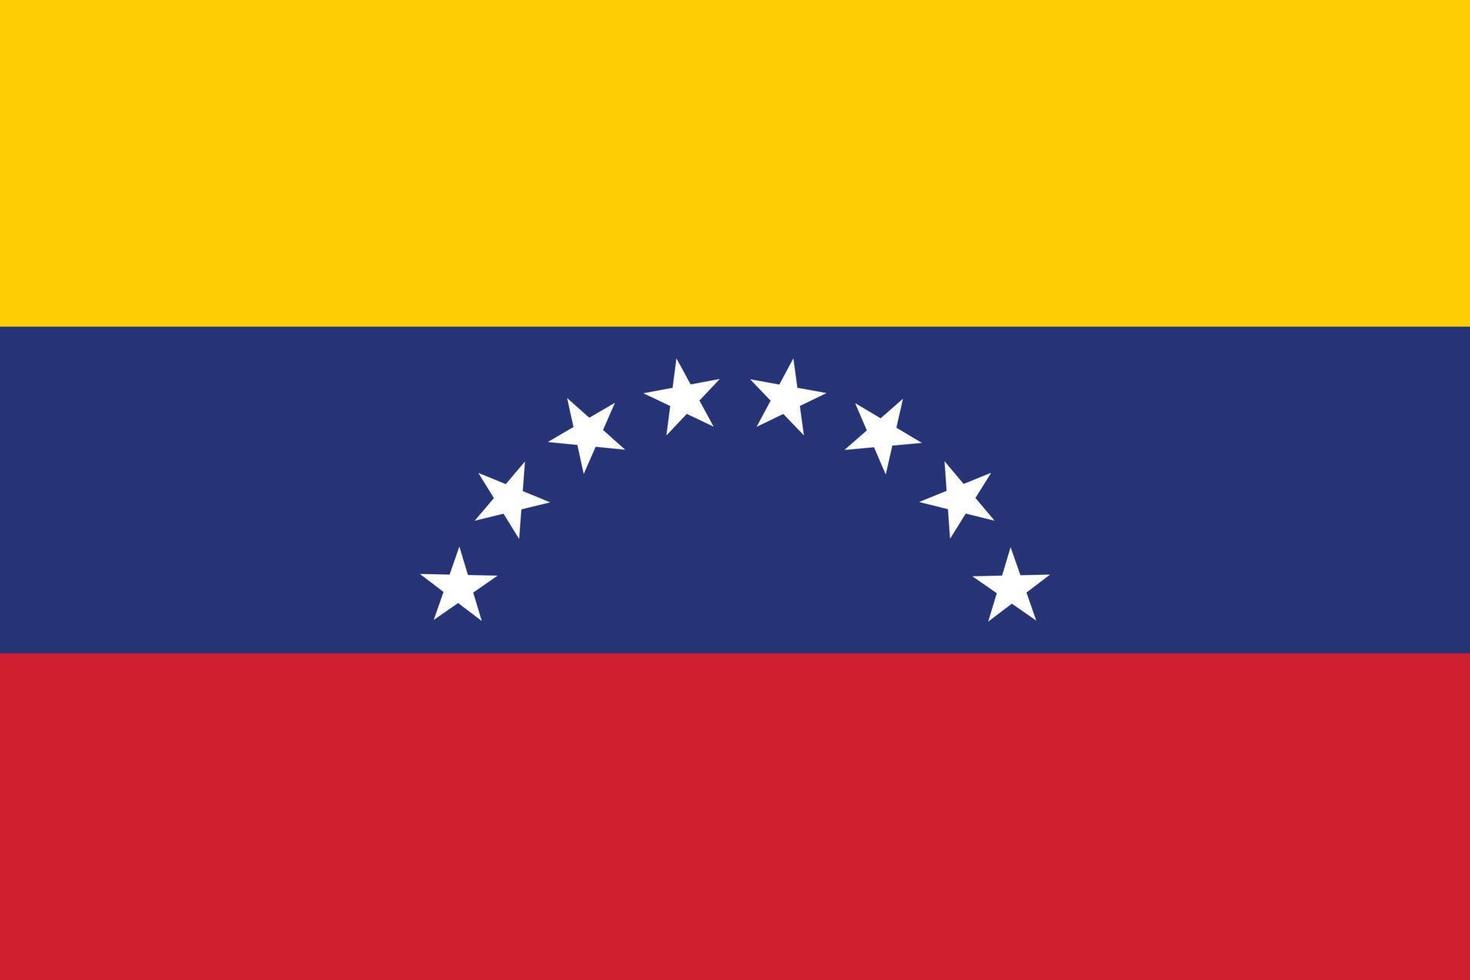 la bandera nacional de la ilustración vectorial de venezuela. bandera de la república bolivariana de venezuela con color oficial y proporción precisa. alférez civil y estatal vector